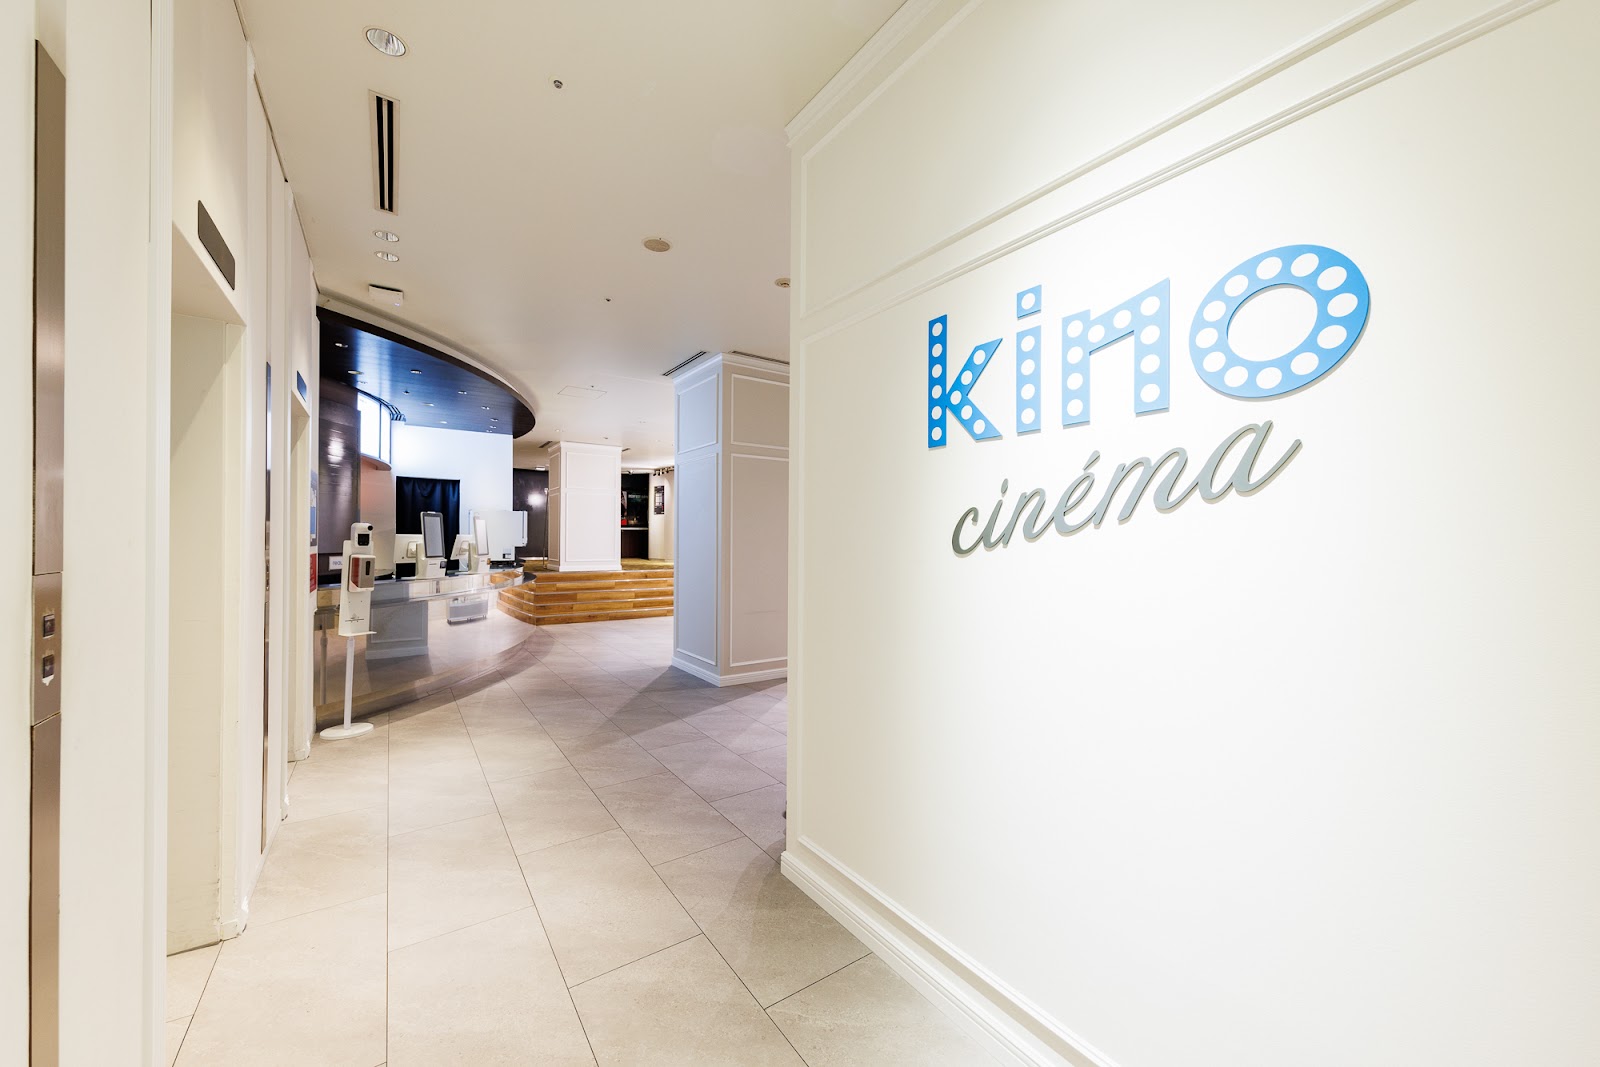 kino cinema新宿の風景